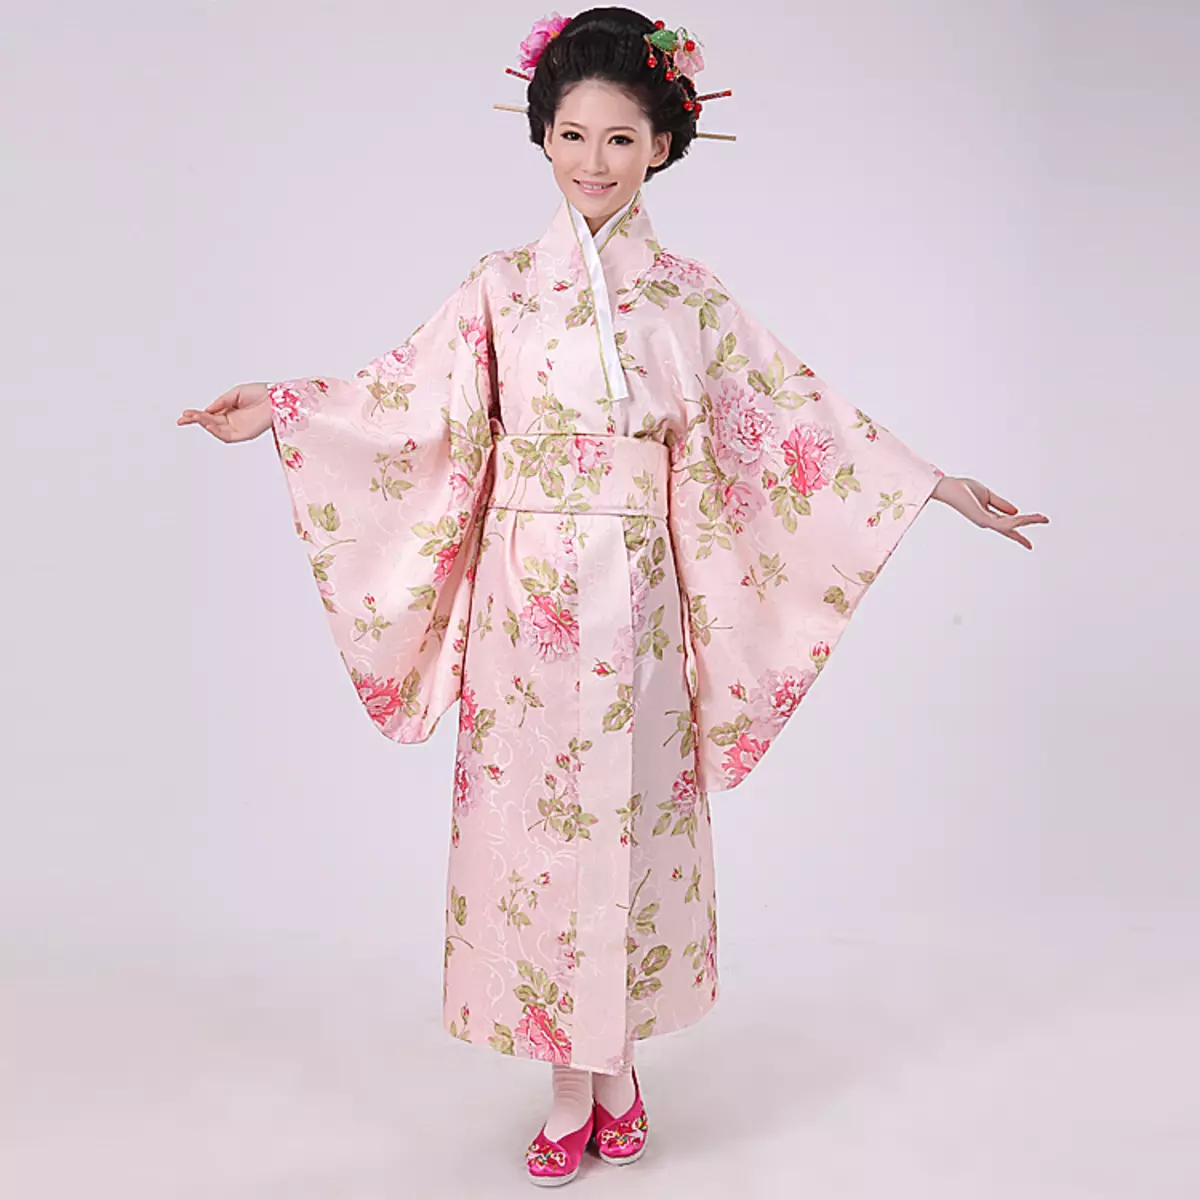 Јапанско одело (61 фотографије): Женски национални оутфит Јапан, школа у школи 1381_8